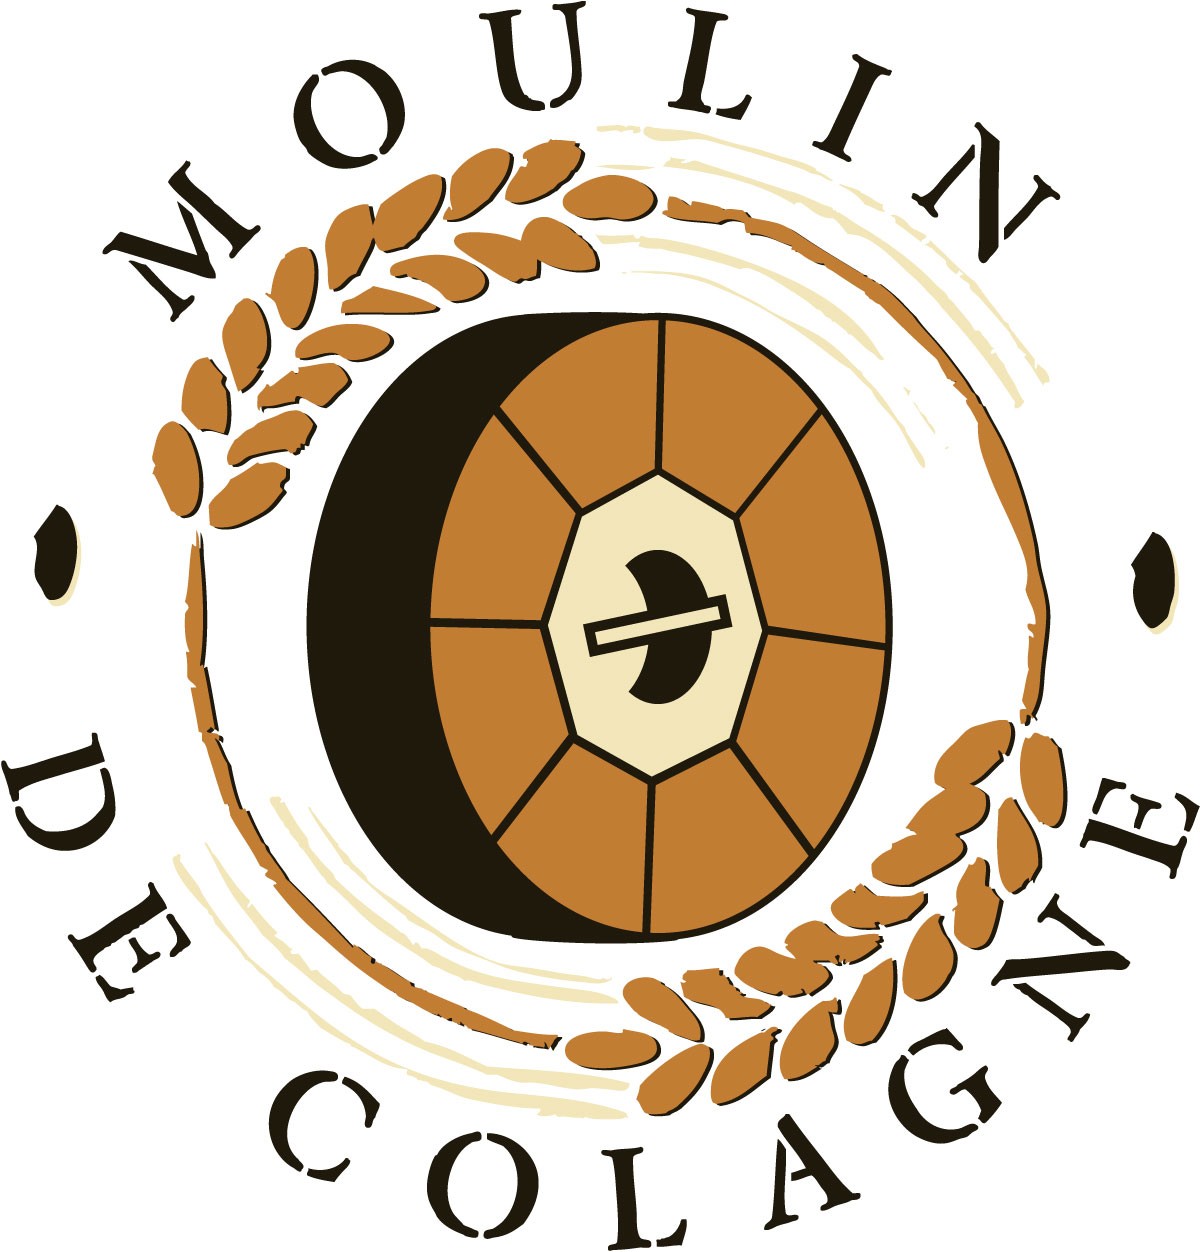 Moulin de Colagne